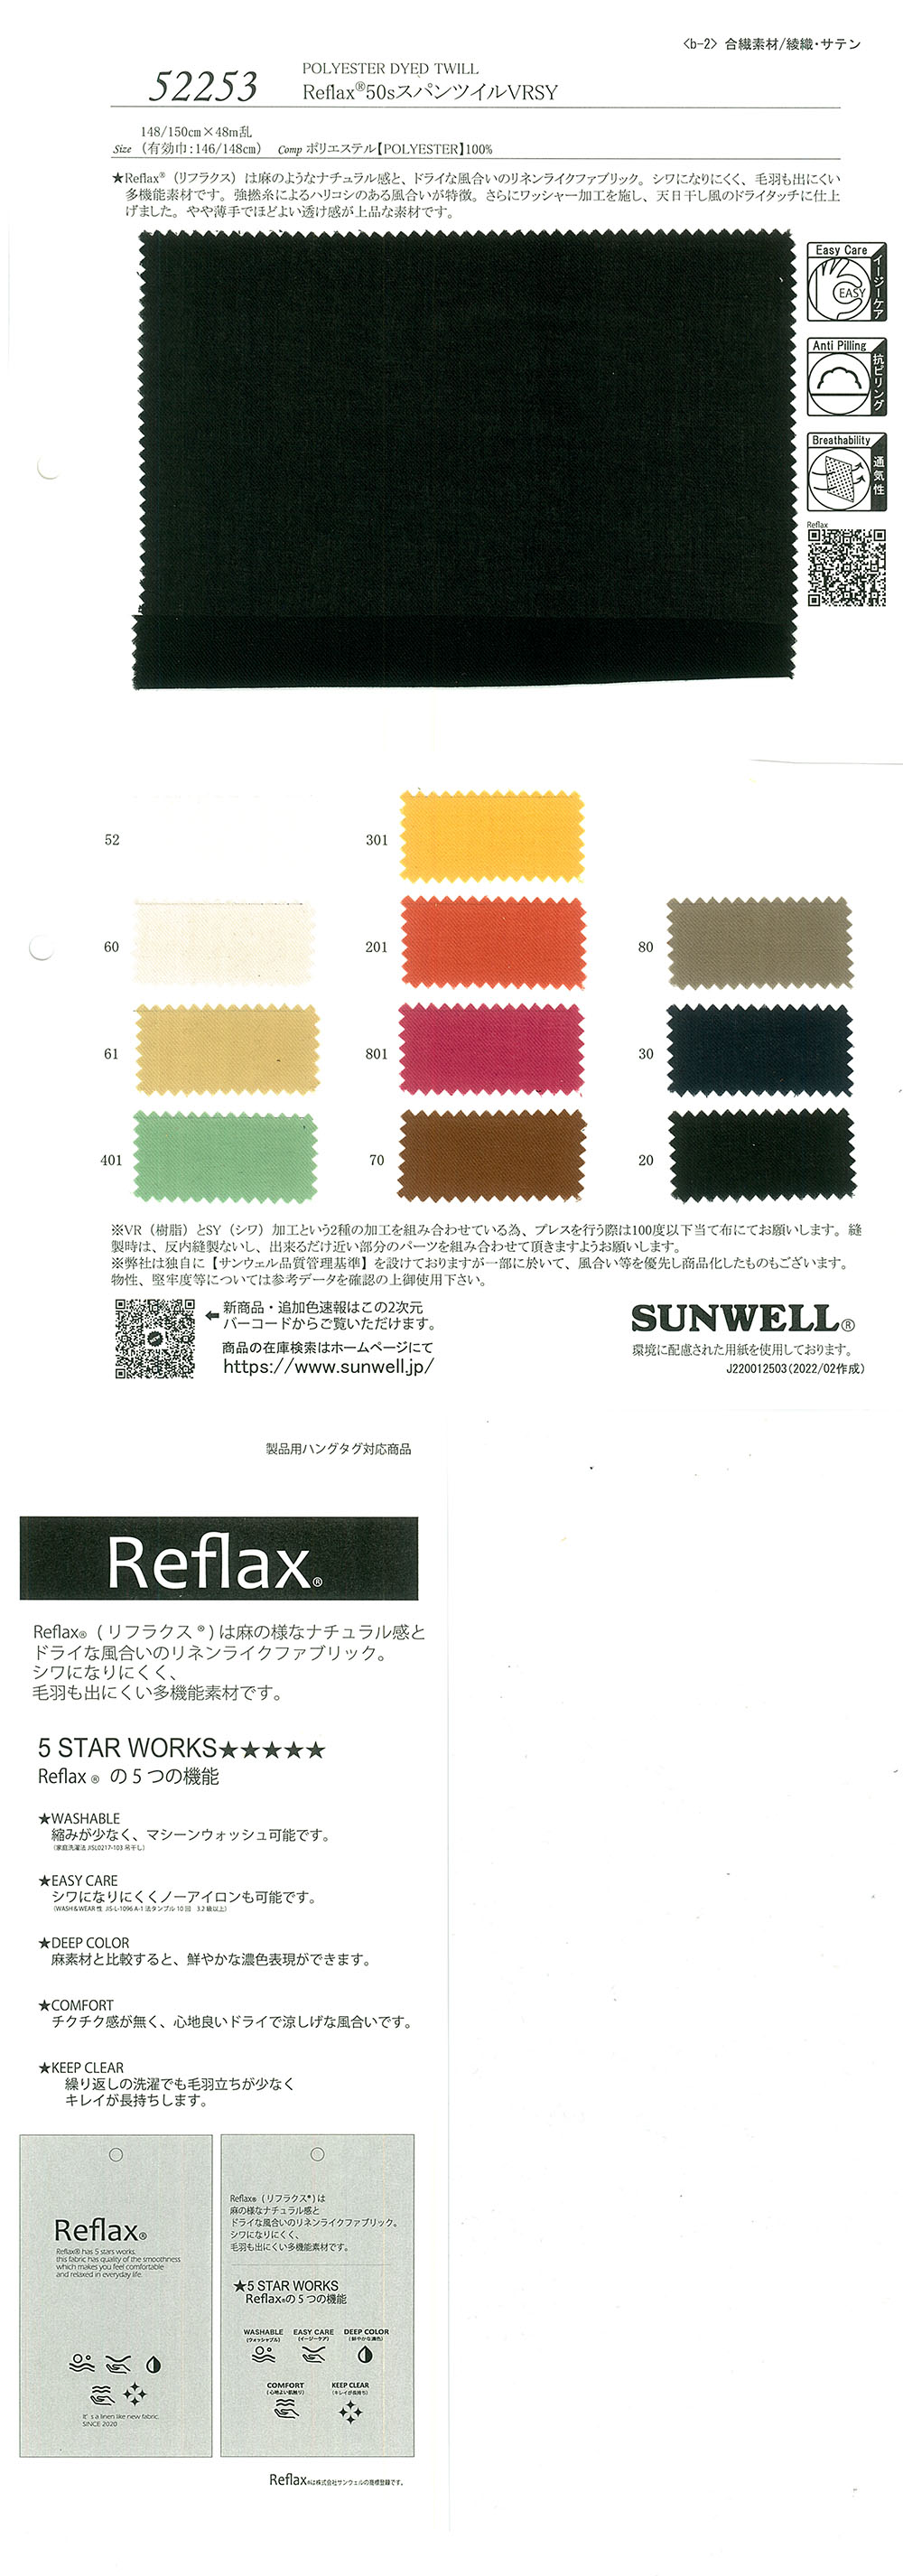 52253 Reflax(R)50 Fil à Carreaux Filé à Un Fil[Fabrication De Textile] SUNWELL